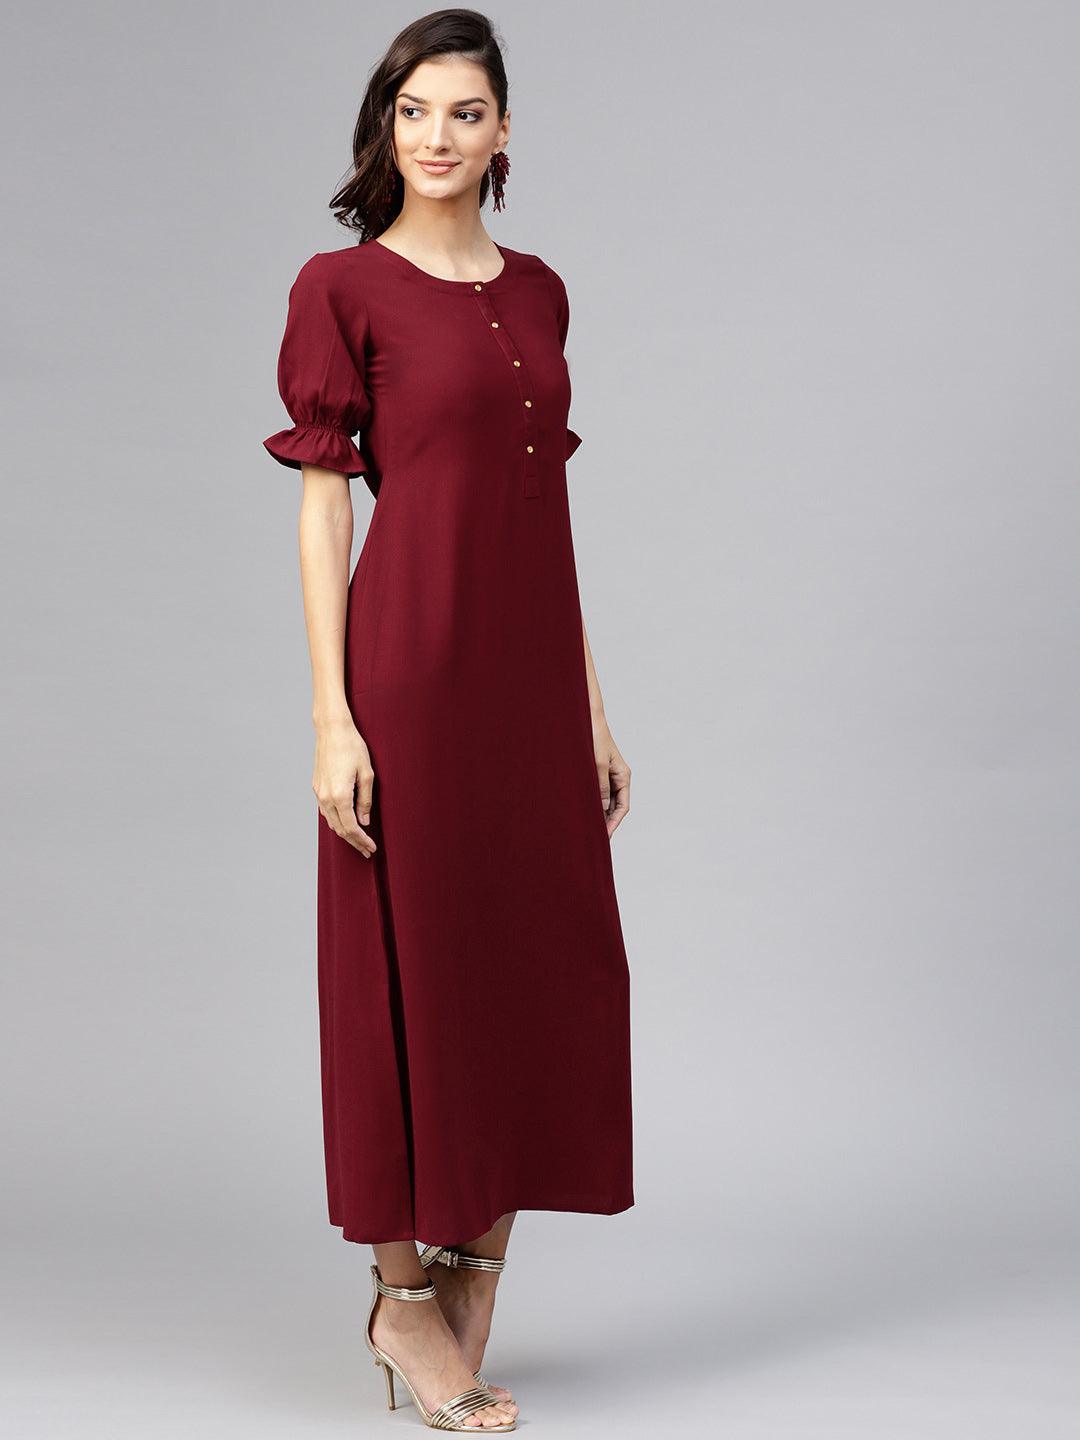 Maroon Solid Georgette Dress - Libas